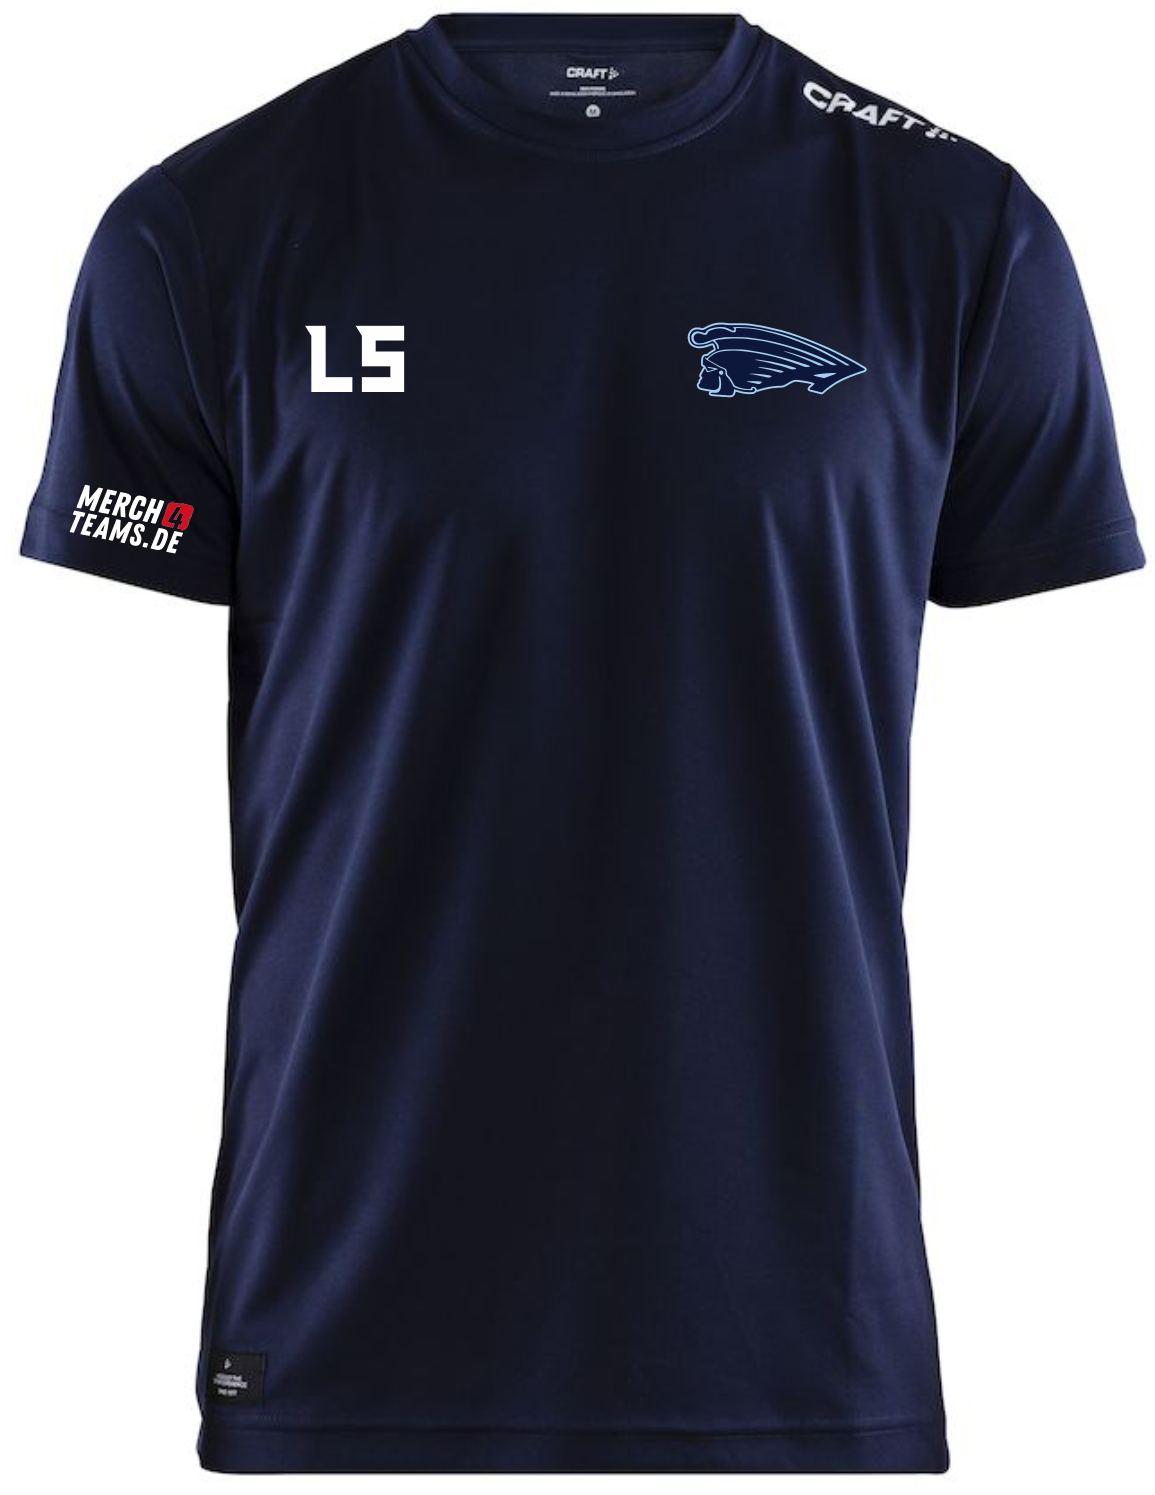 Argonauts_ Community Function Shirt Erwachsener Farbe: navy